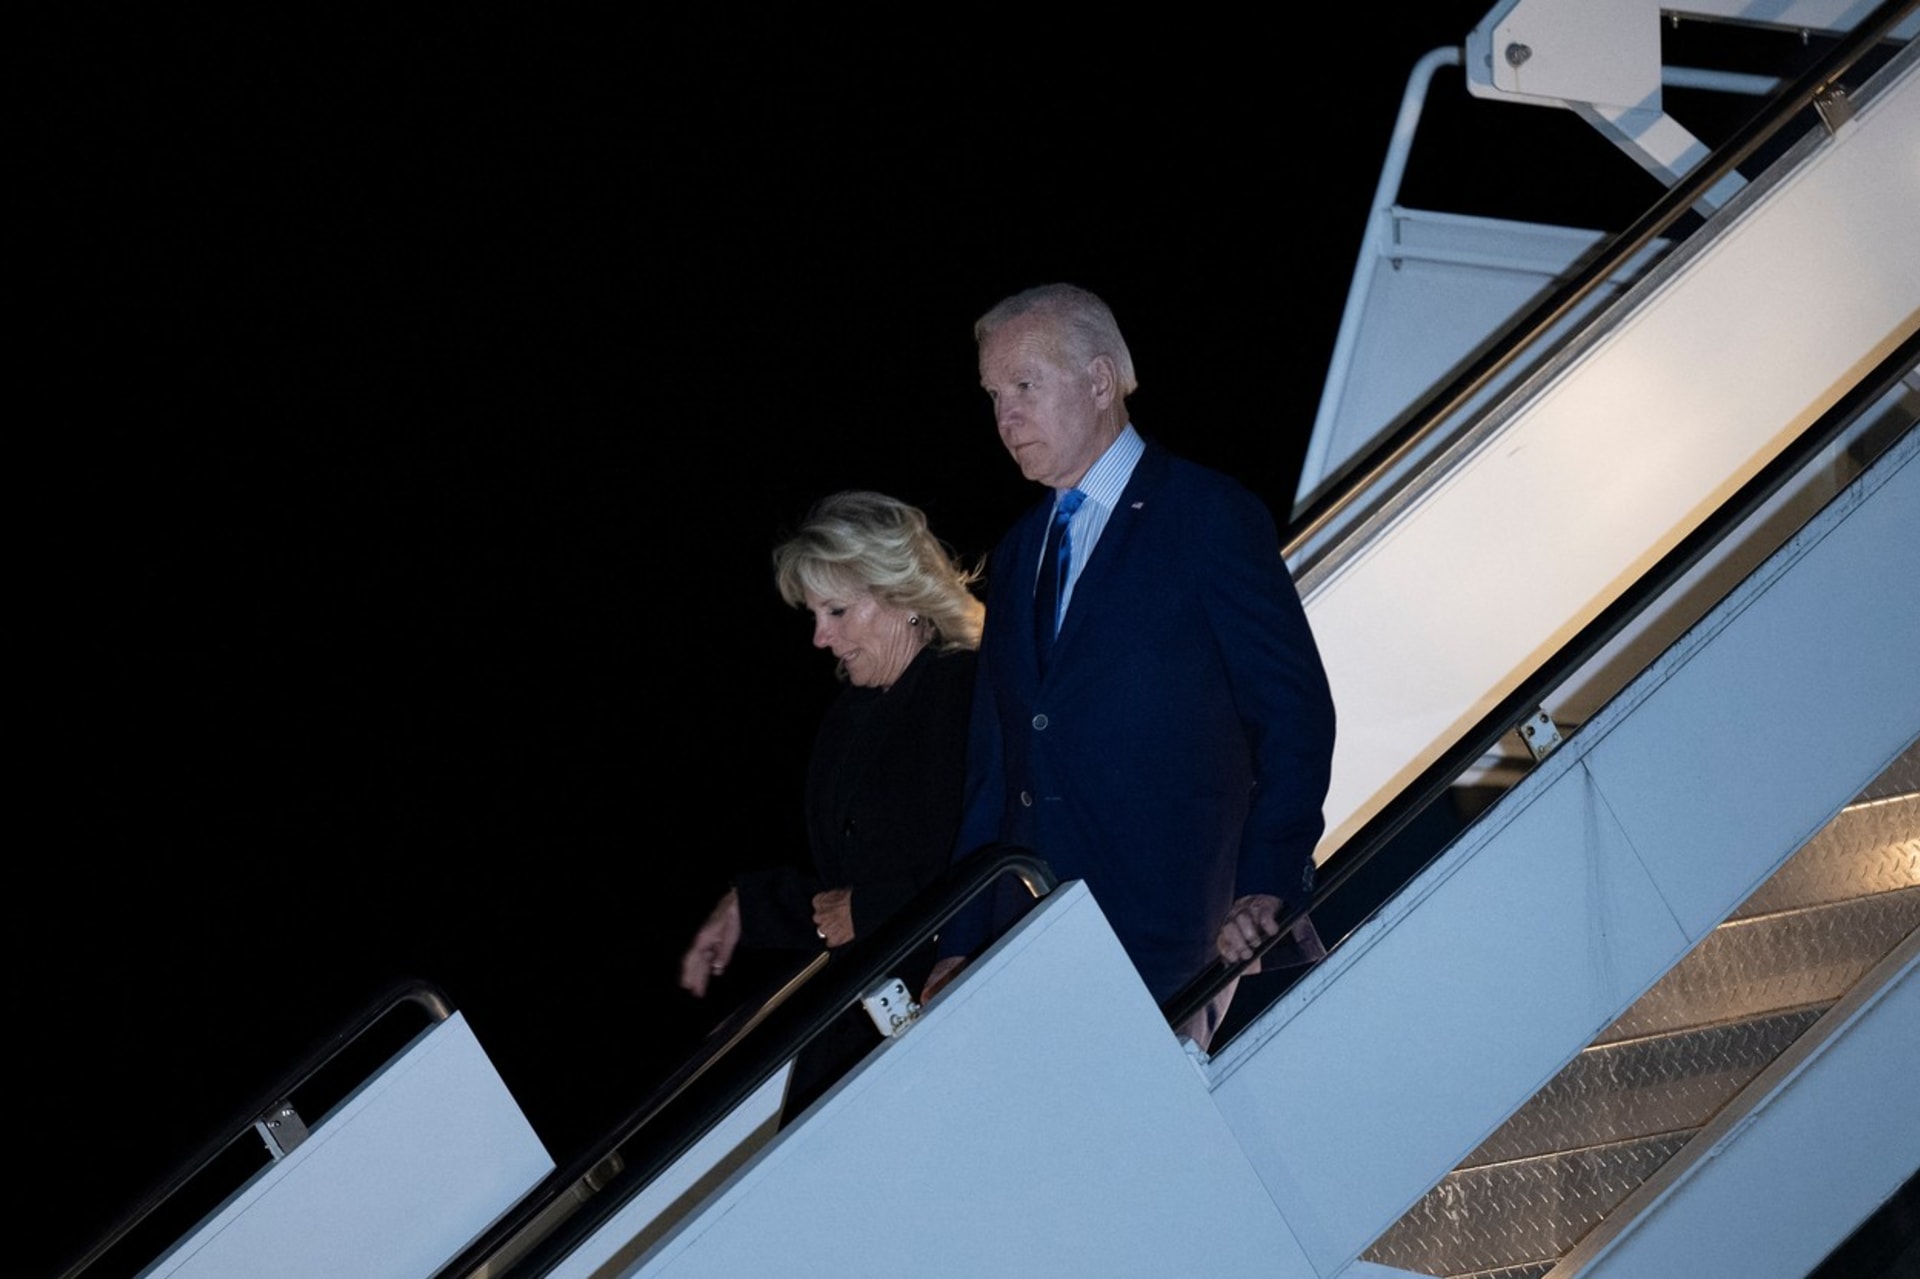 Americký prezident Joe Biden s manželkou při výstupu z letadla